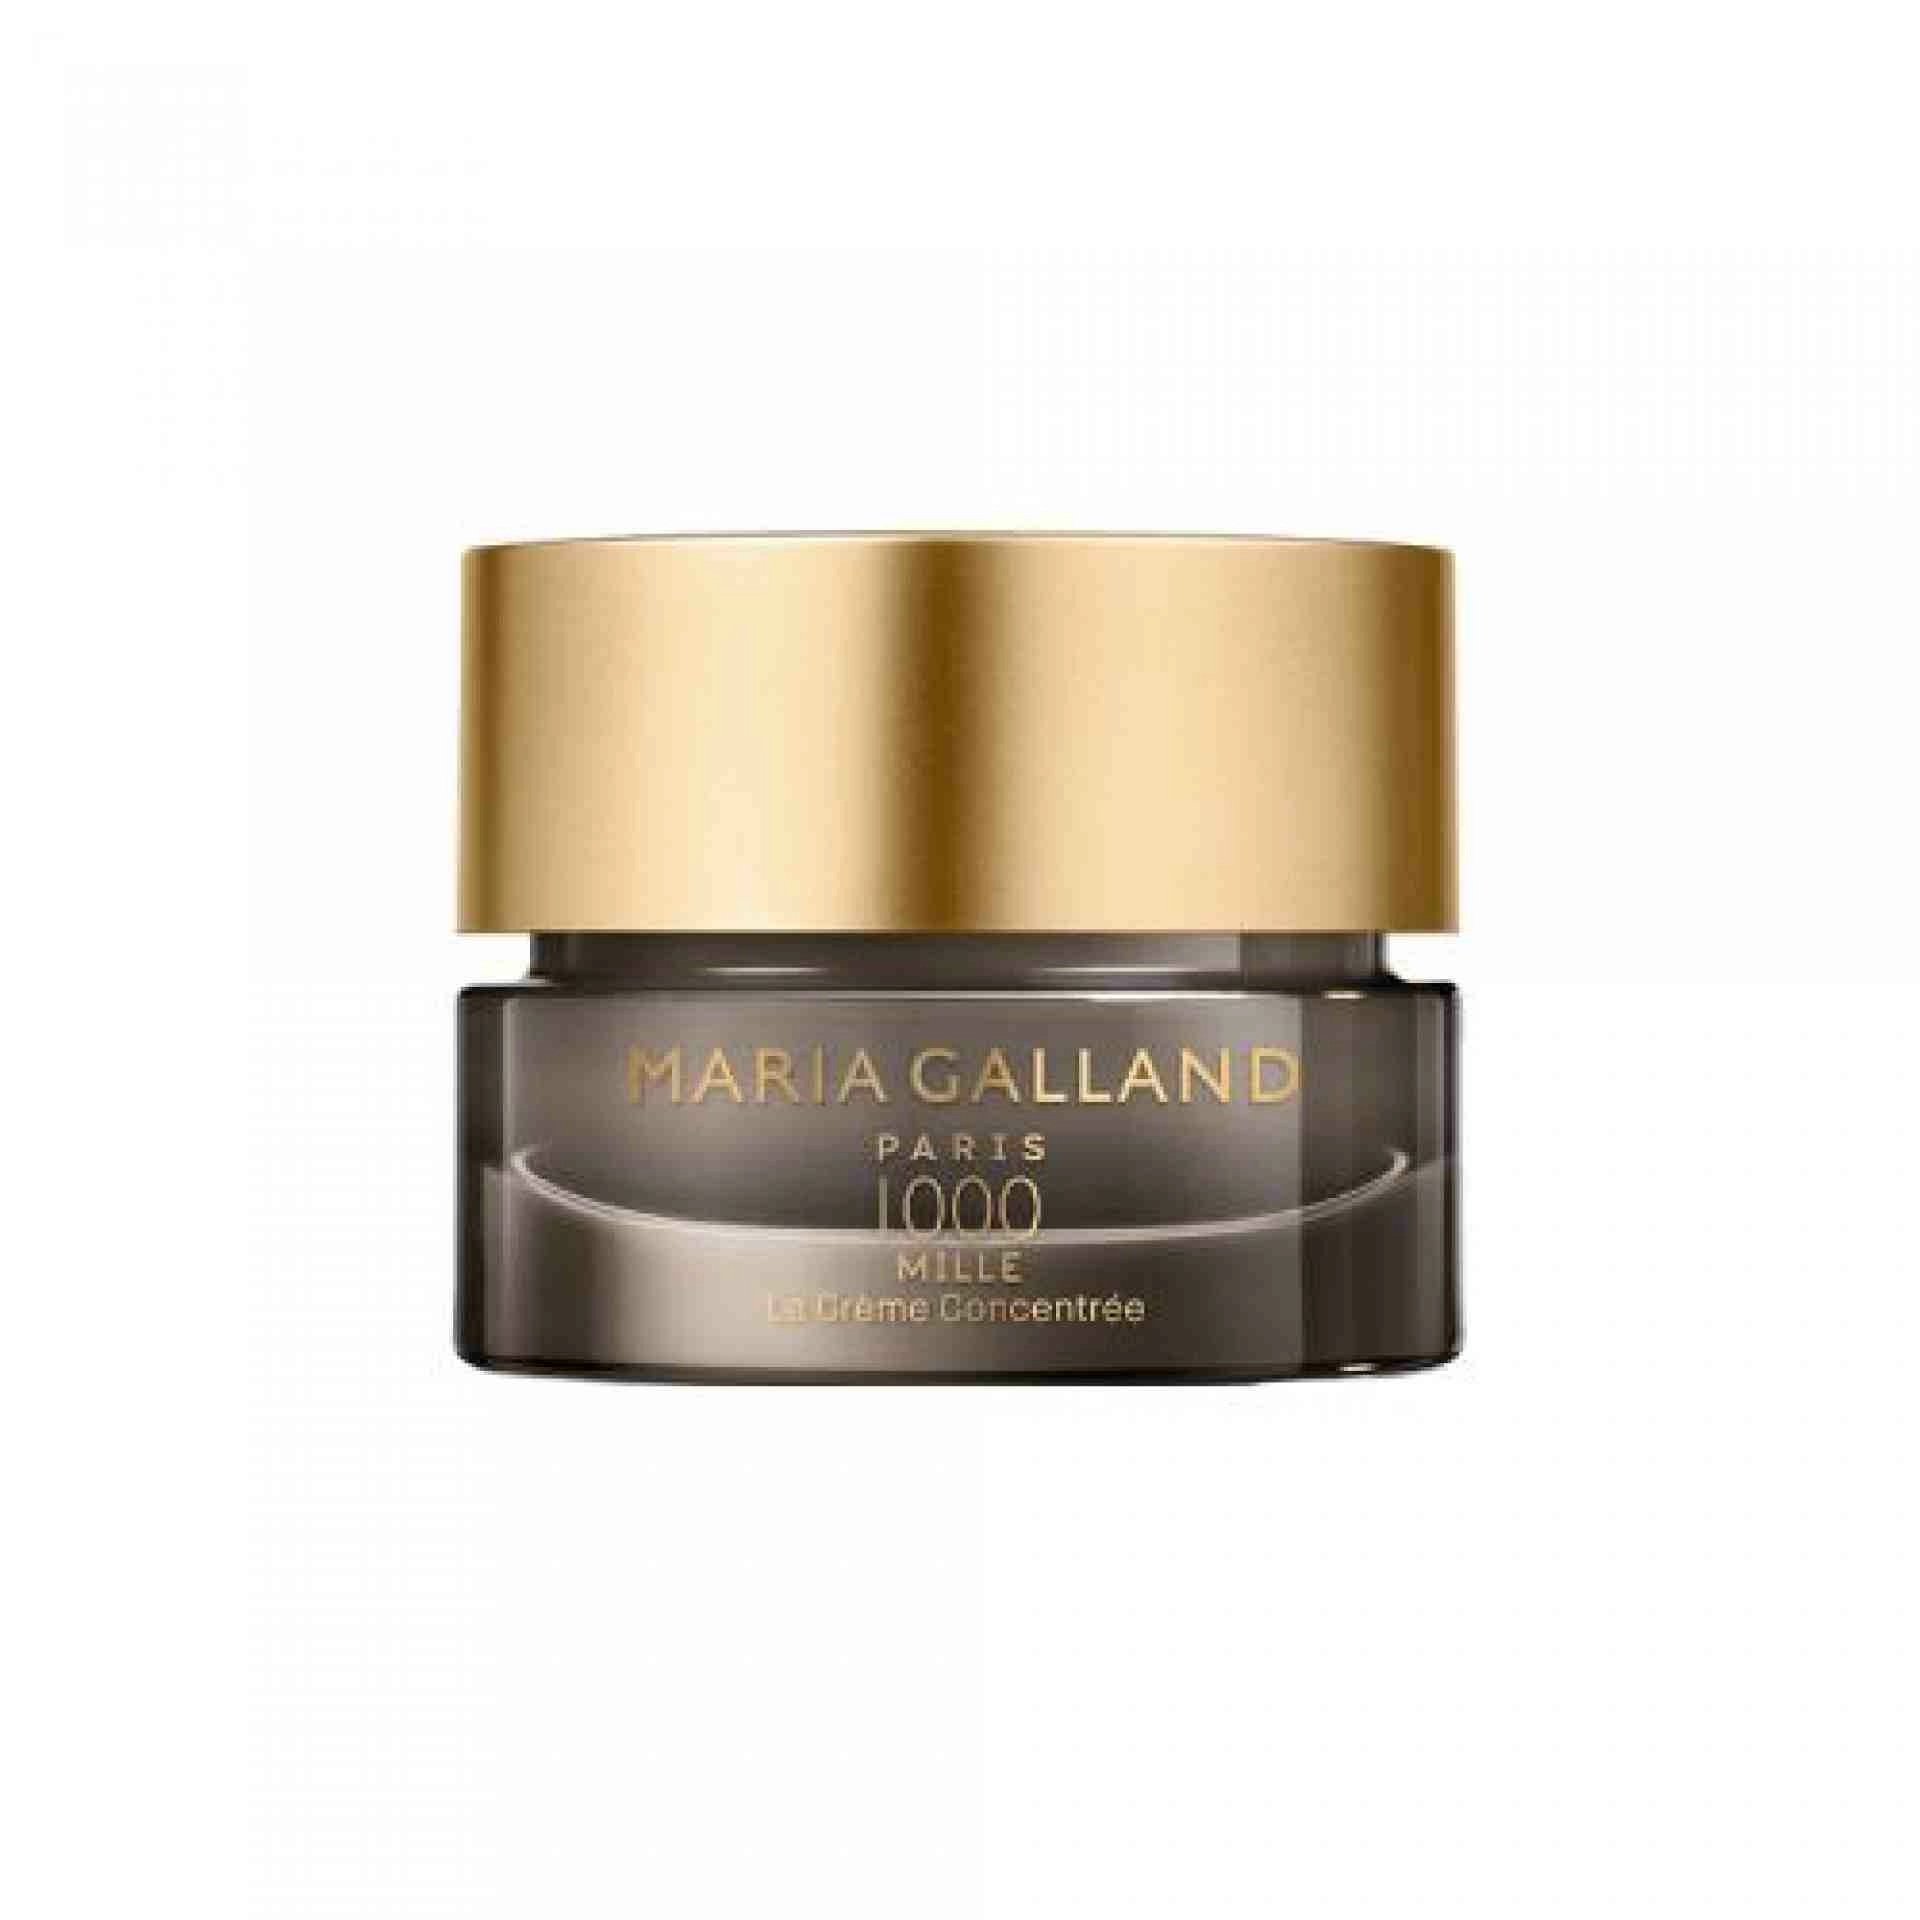 1000 La Crème Concentré | Crema antiedad global para piel seca 50ml - Mille - Maria Galland ®